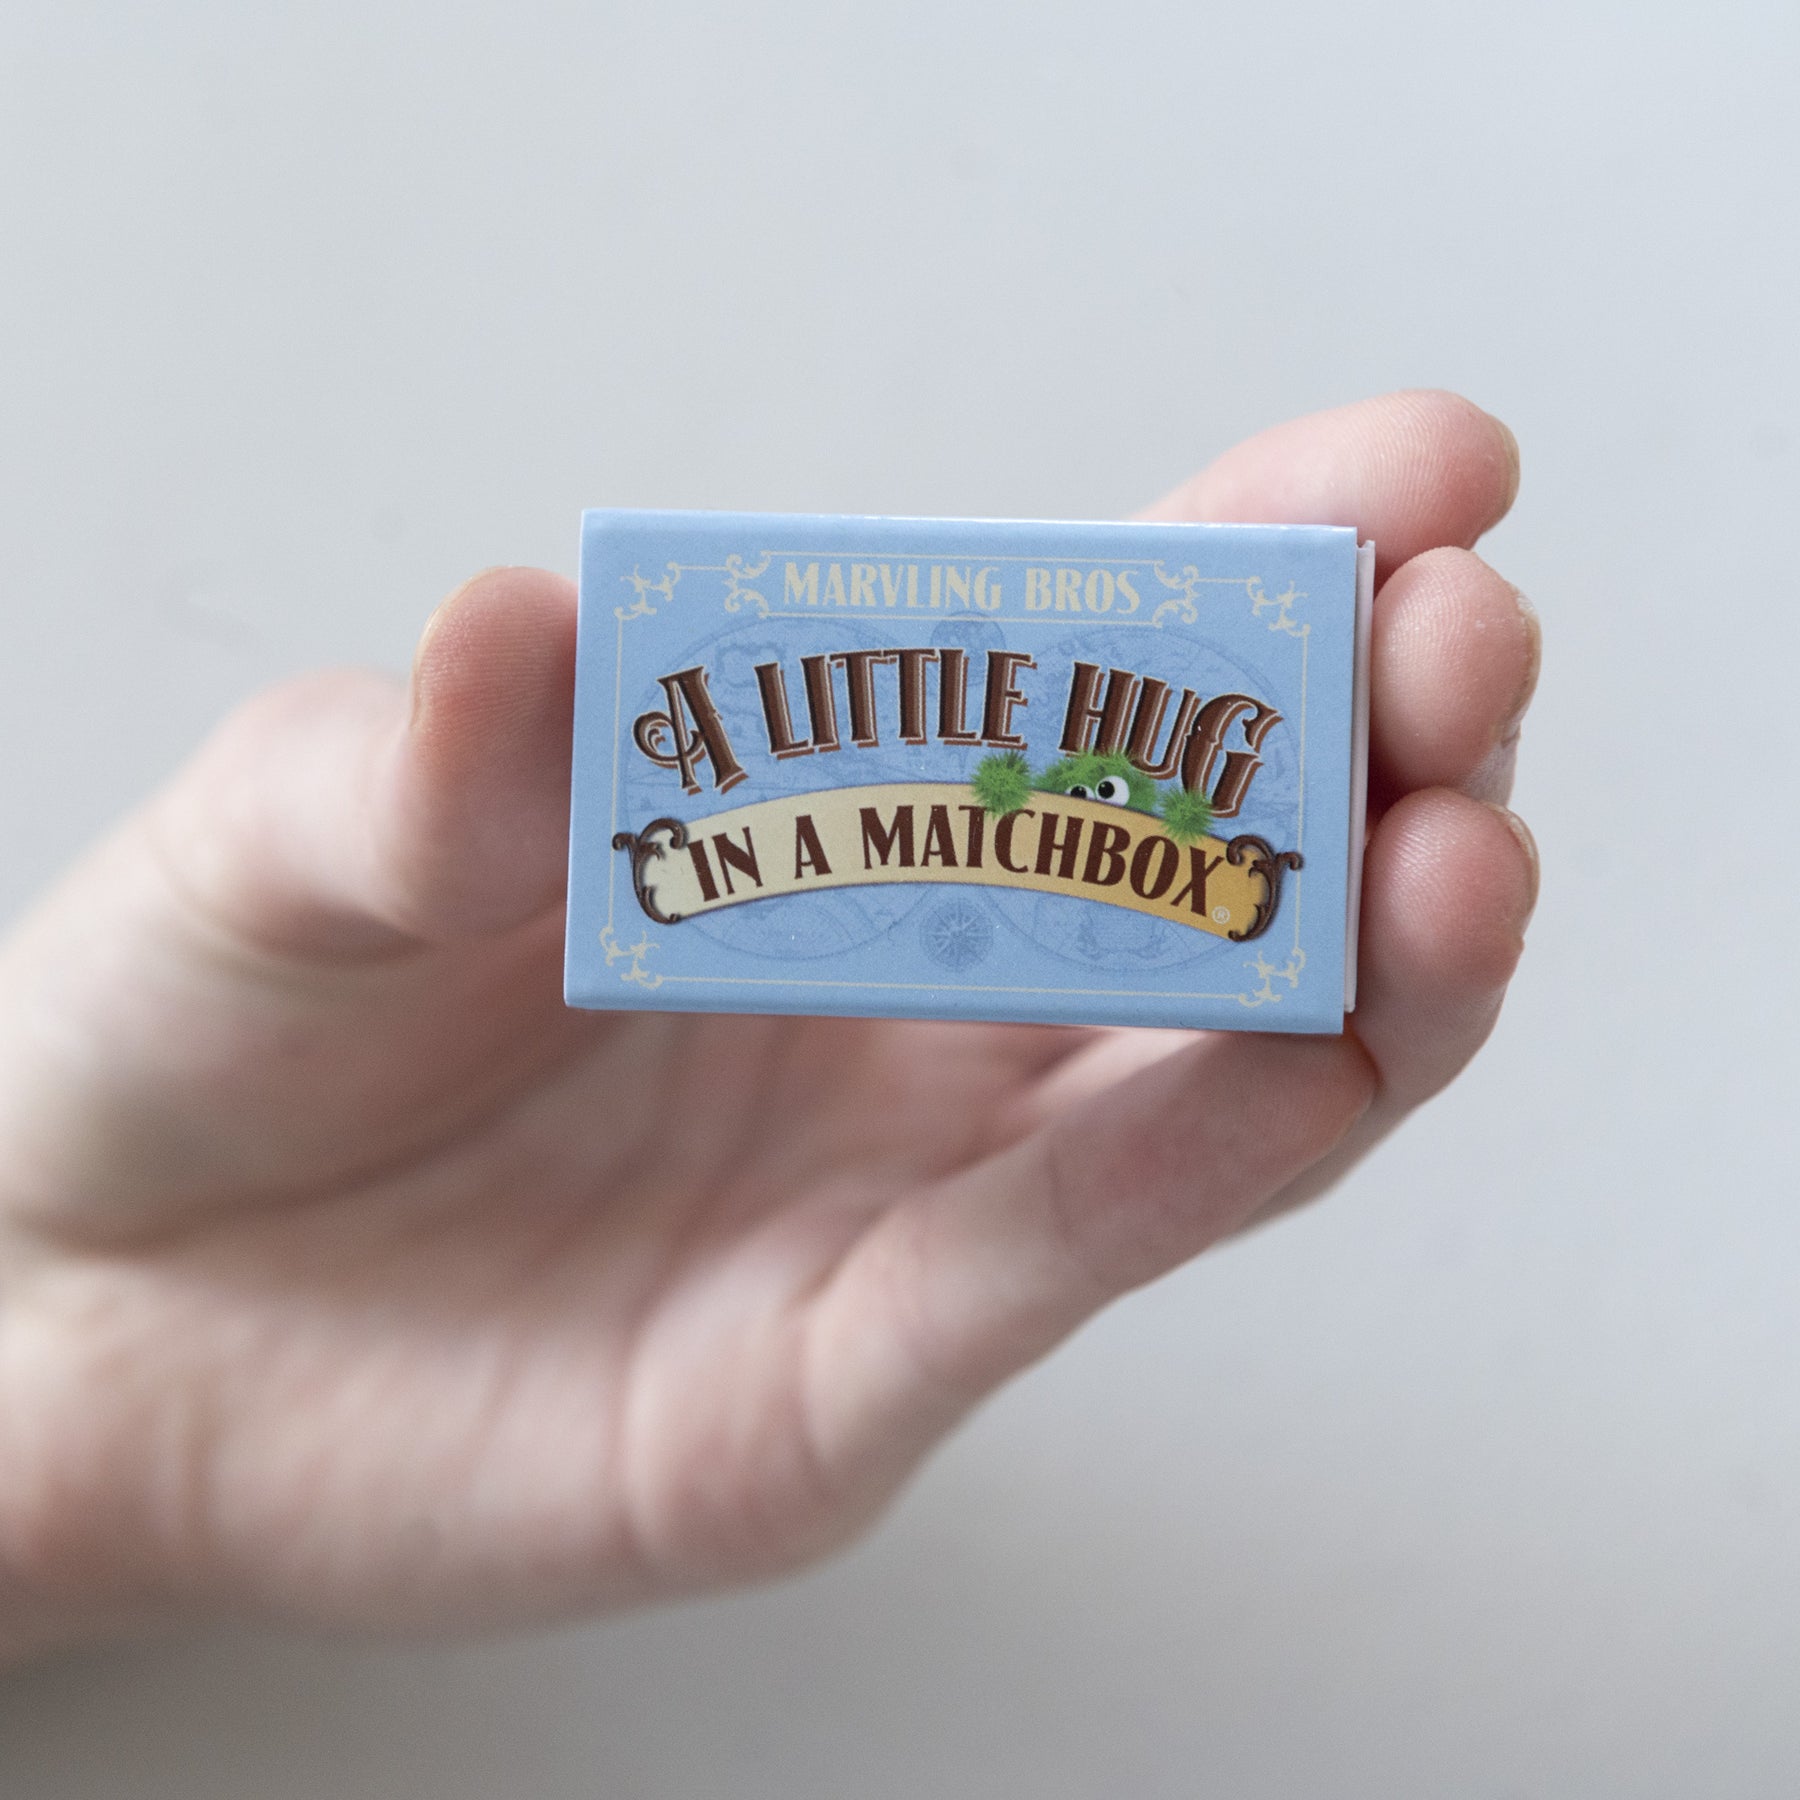 A Blue Little Hug in a matchbox